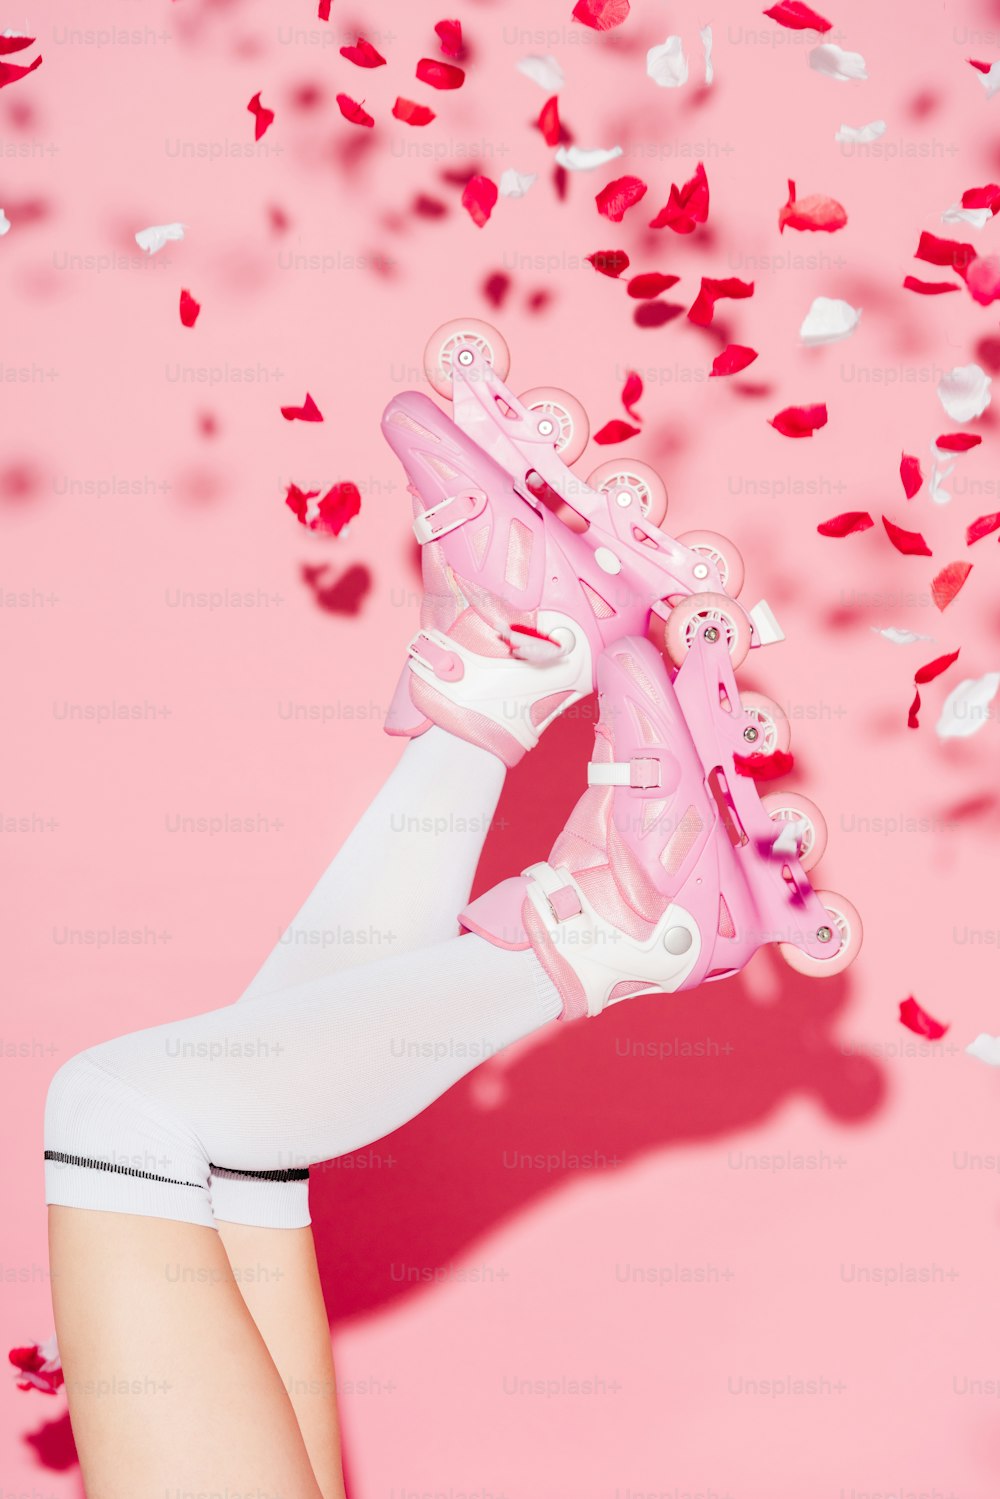 visão cortada da menina que usa meias longas e patins perto de pétalas de rosa em rosa